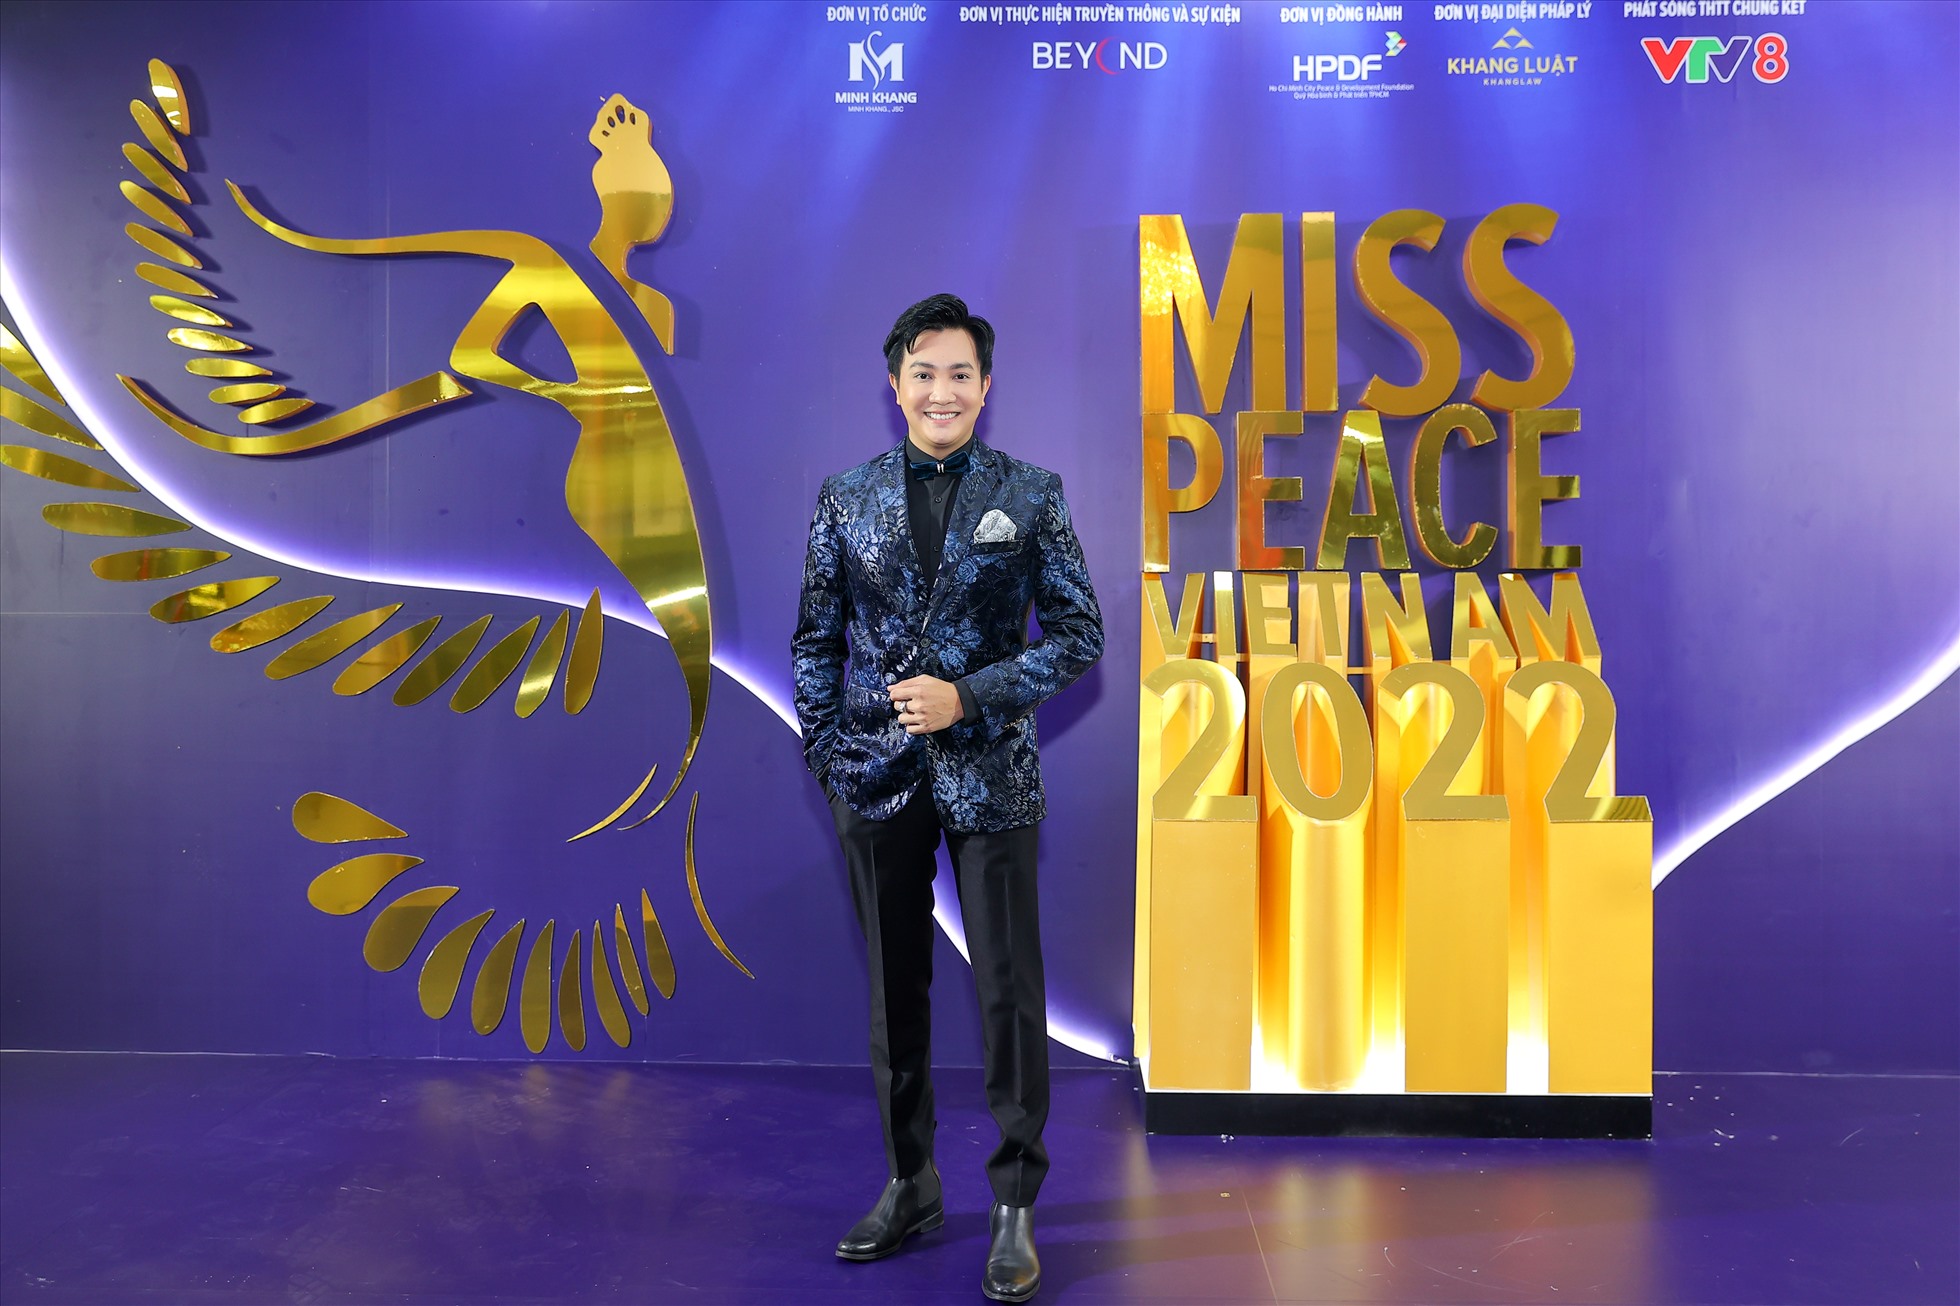 Hoa hậu H'Hen Niê diện váy cắt xẻ táo bạo tại chung kết Miss Peace Vietnam